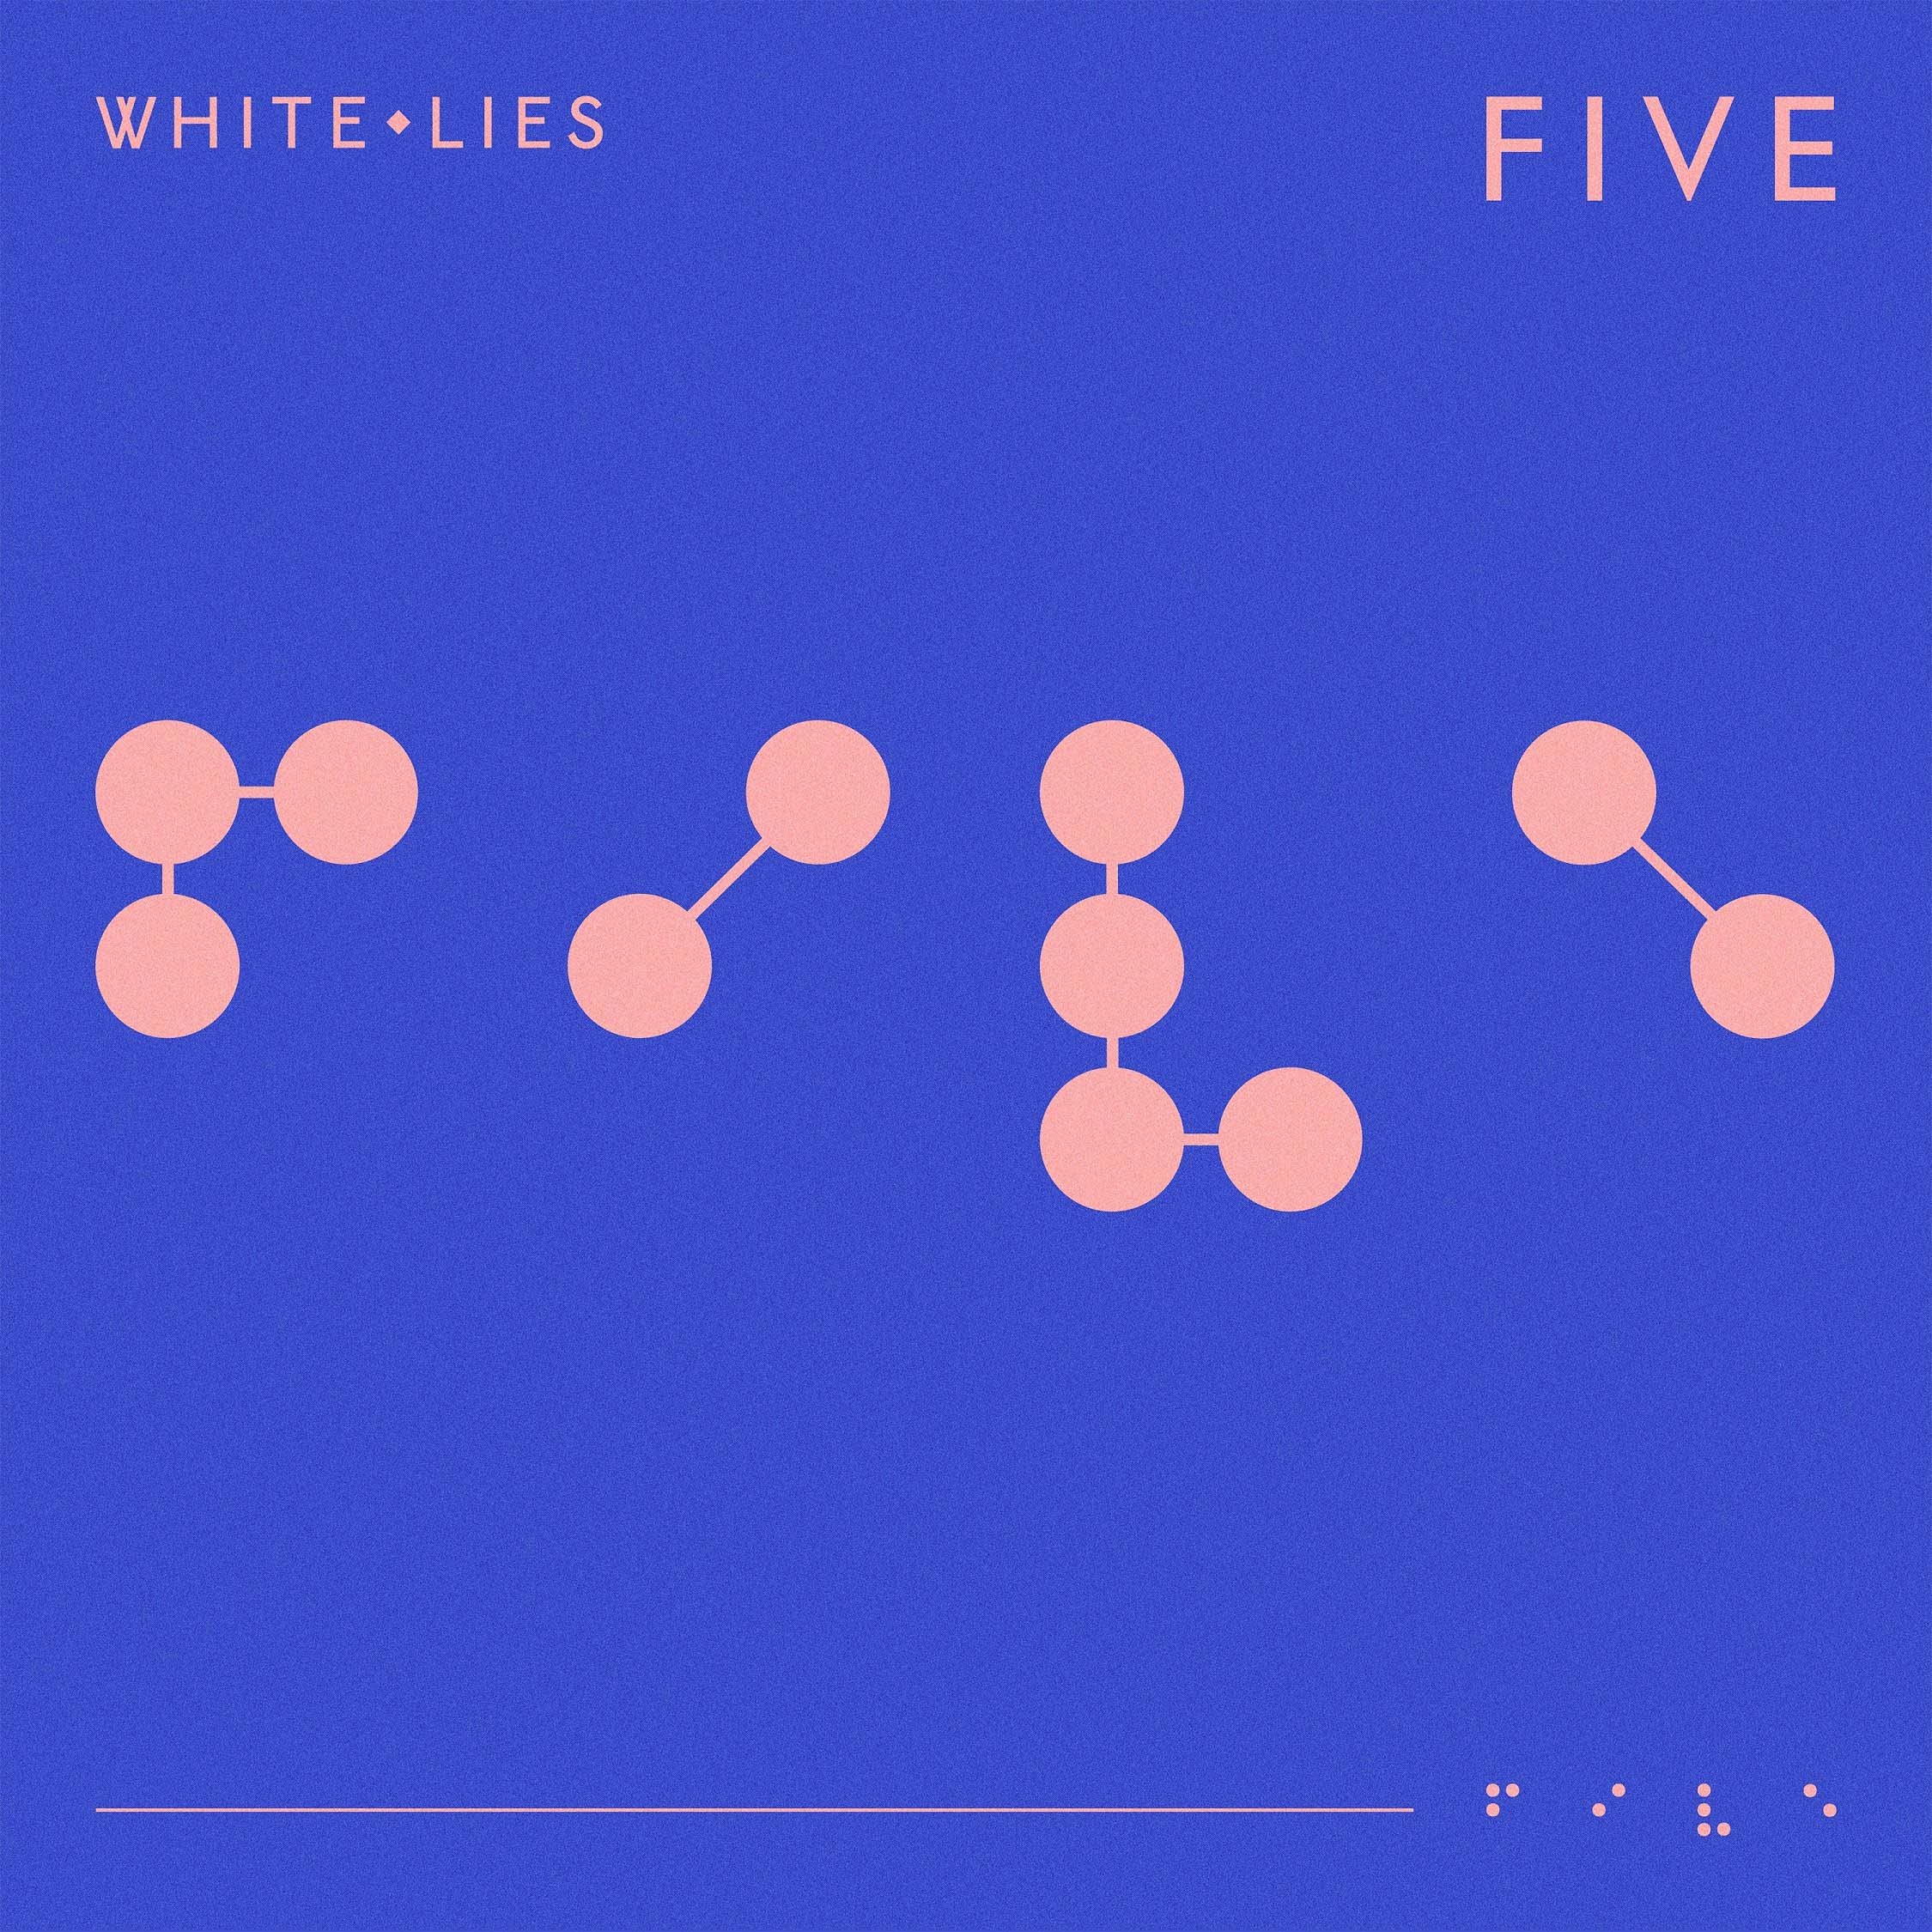 White Lies anuncia nuevo disco ‘Five’ con su primer sencillo ‘Time To Give’